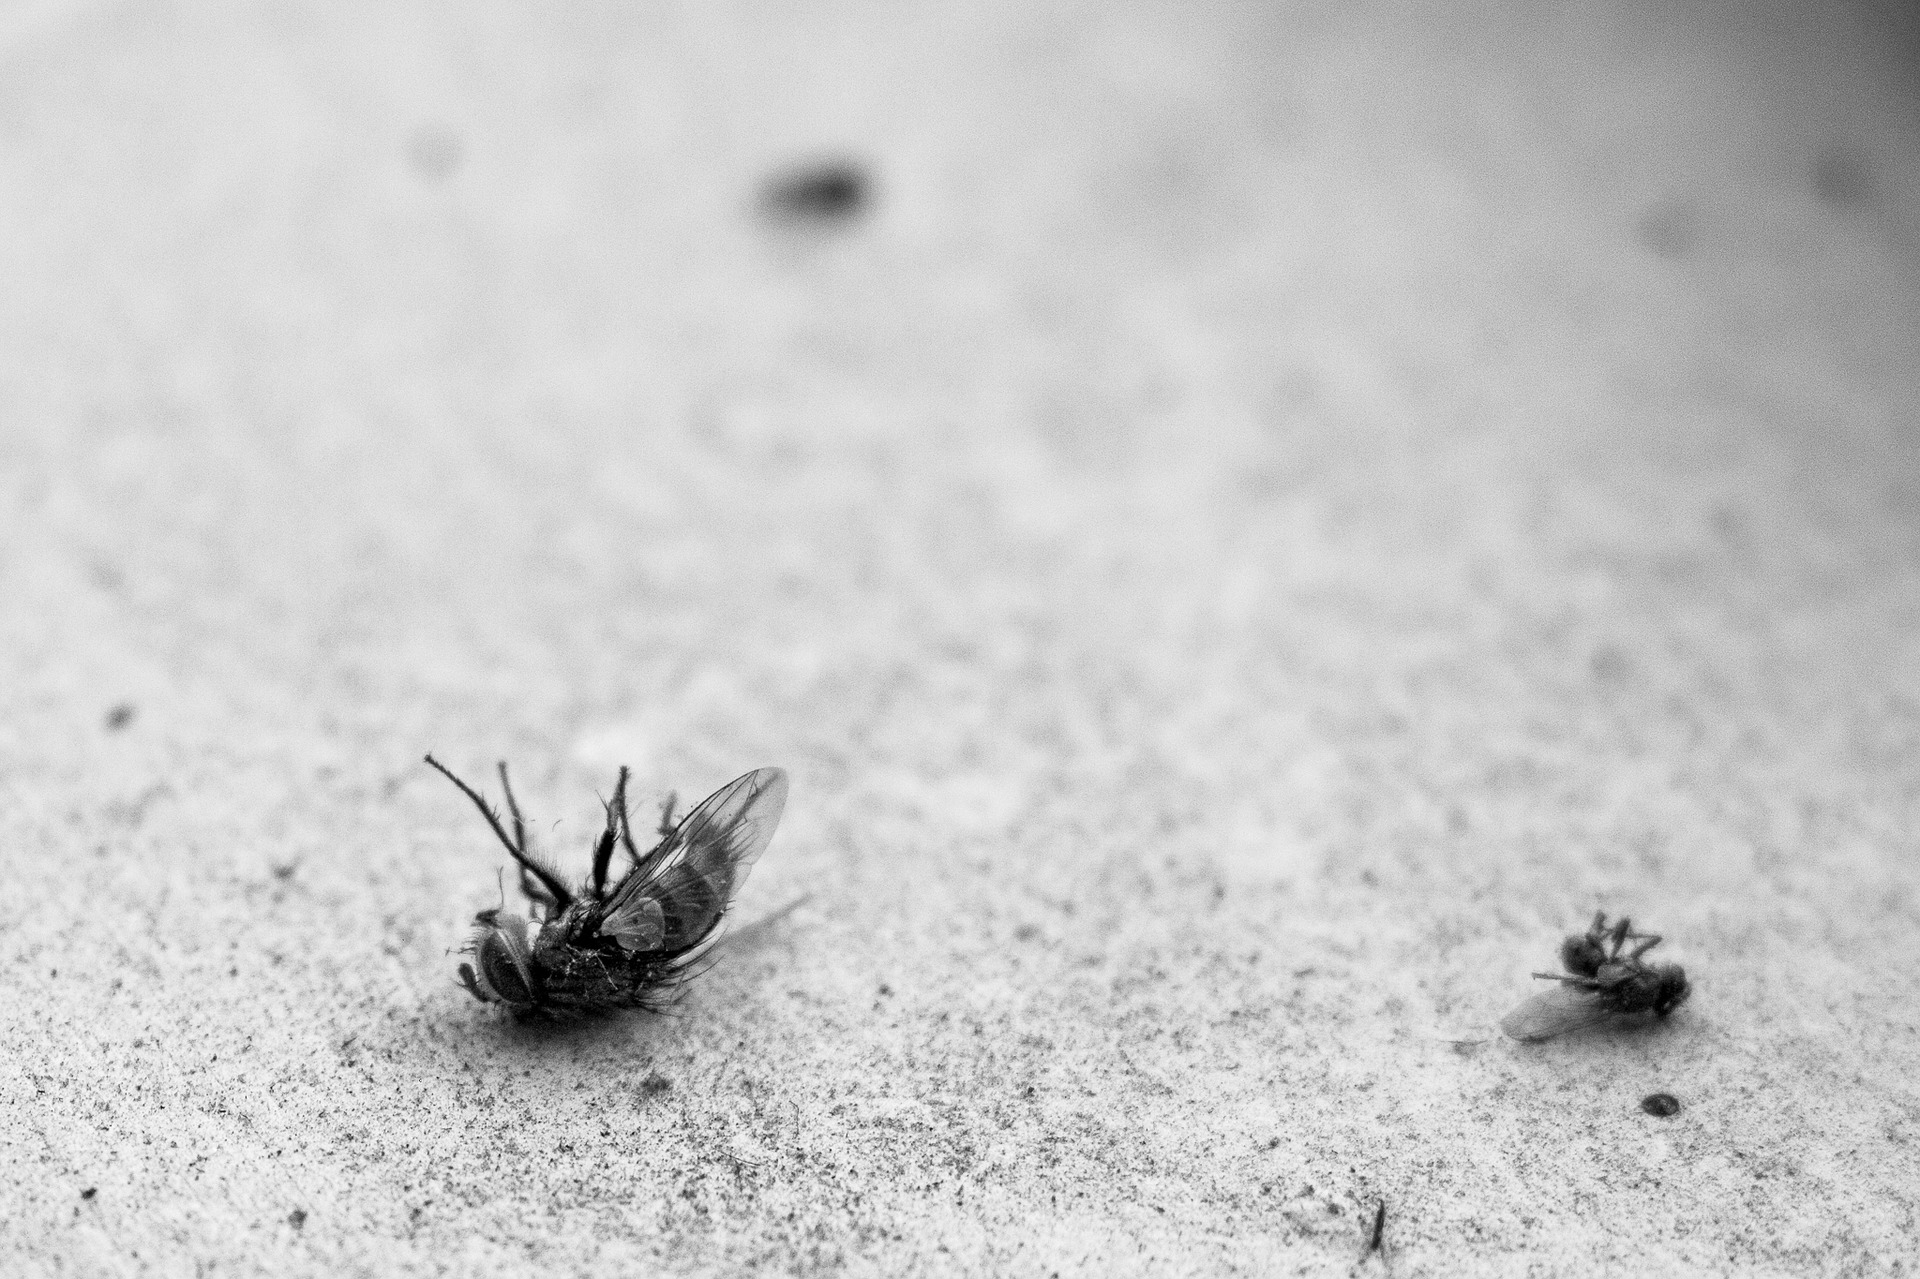 dead fly